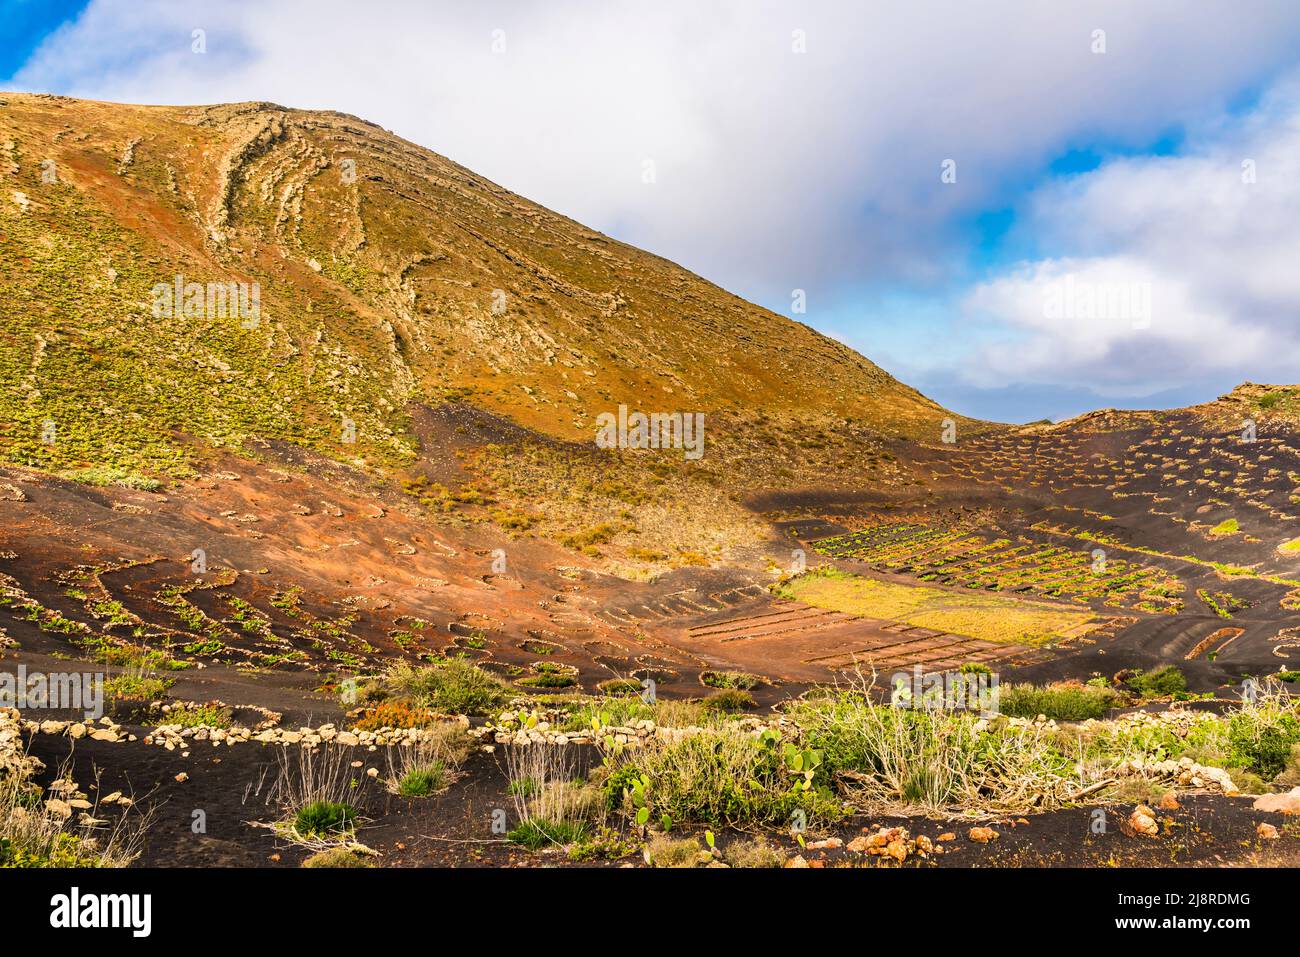 Panorama of vines in La Geria Caldereta, Los Volcanes Natural Park, Lanzarote, Spain Stock Photo